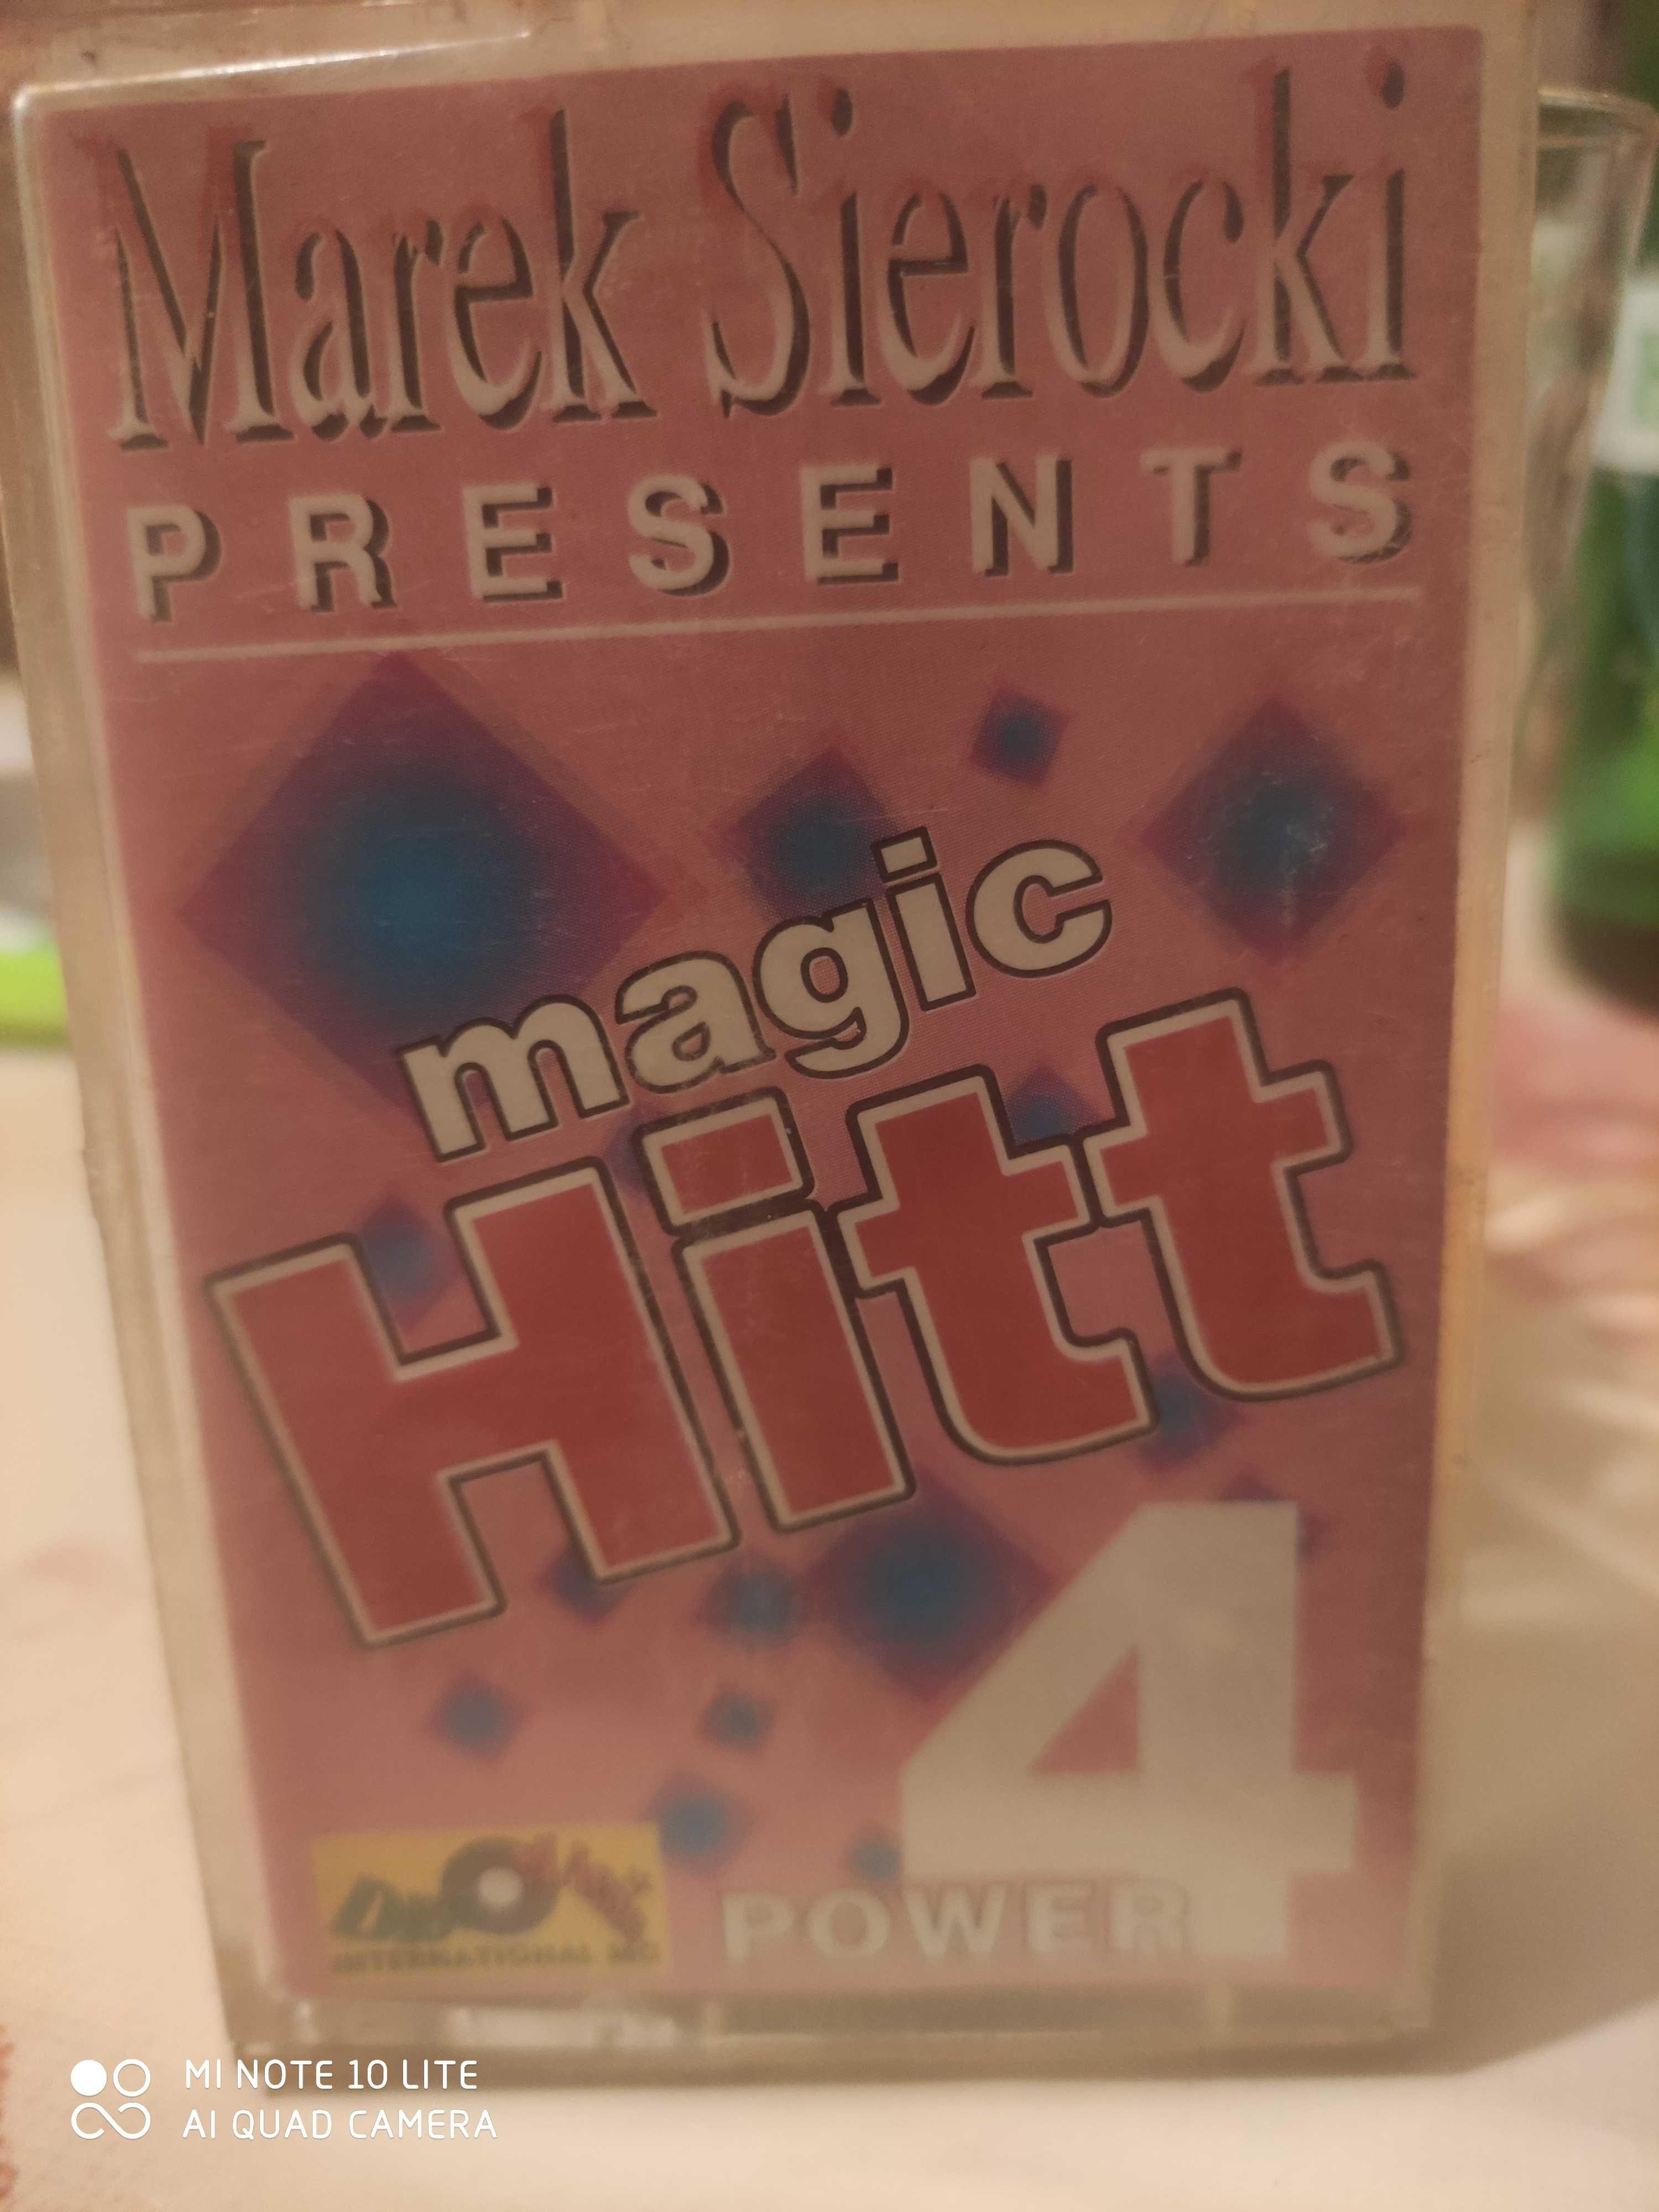 Marek Siwrocki magic Hity 4 power kaseta